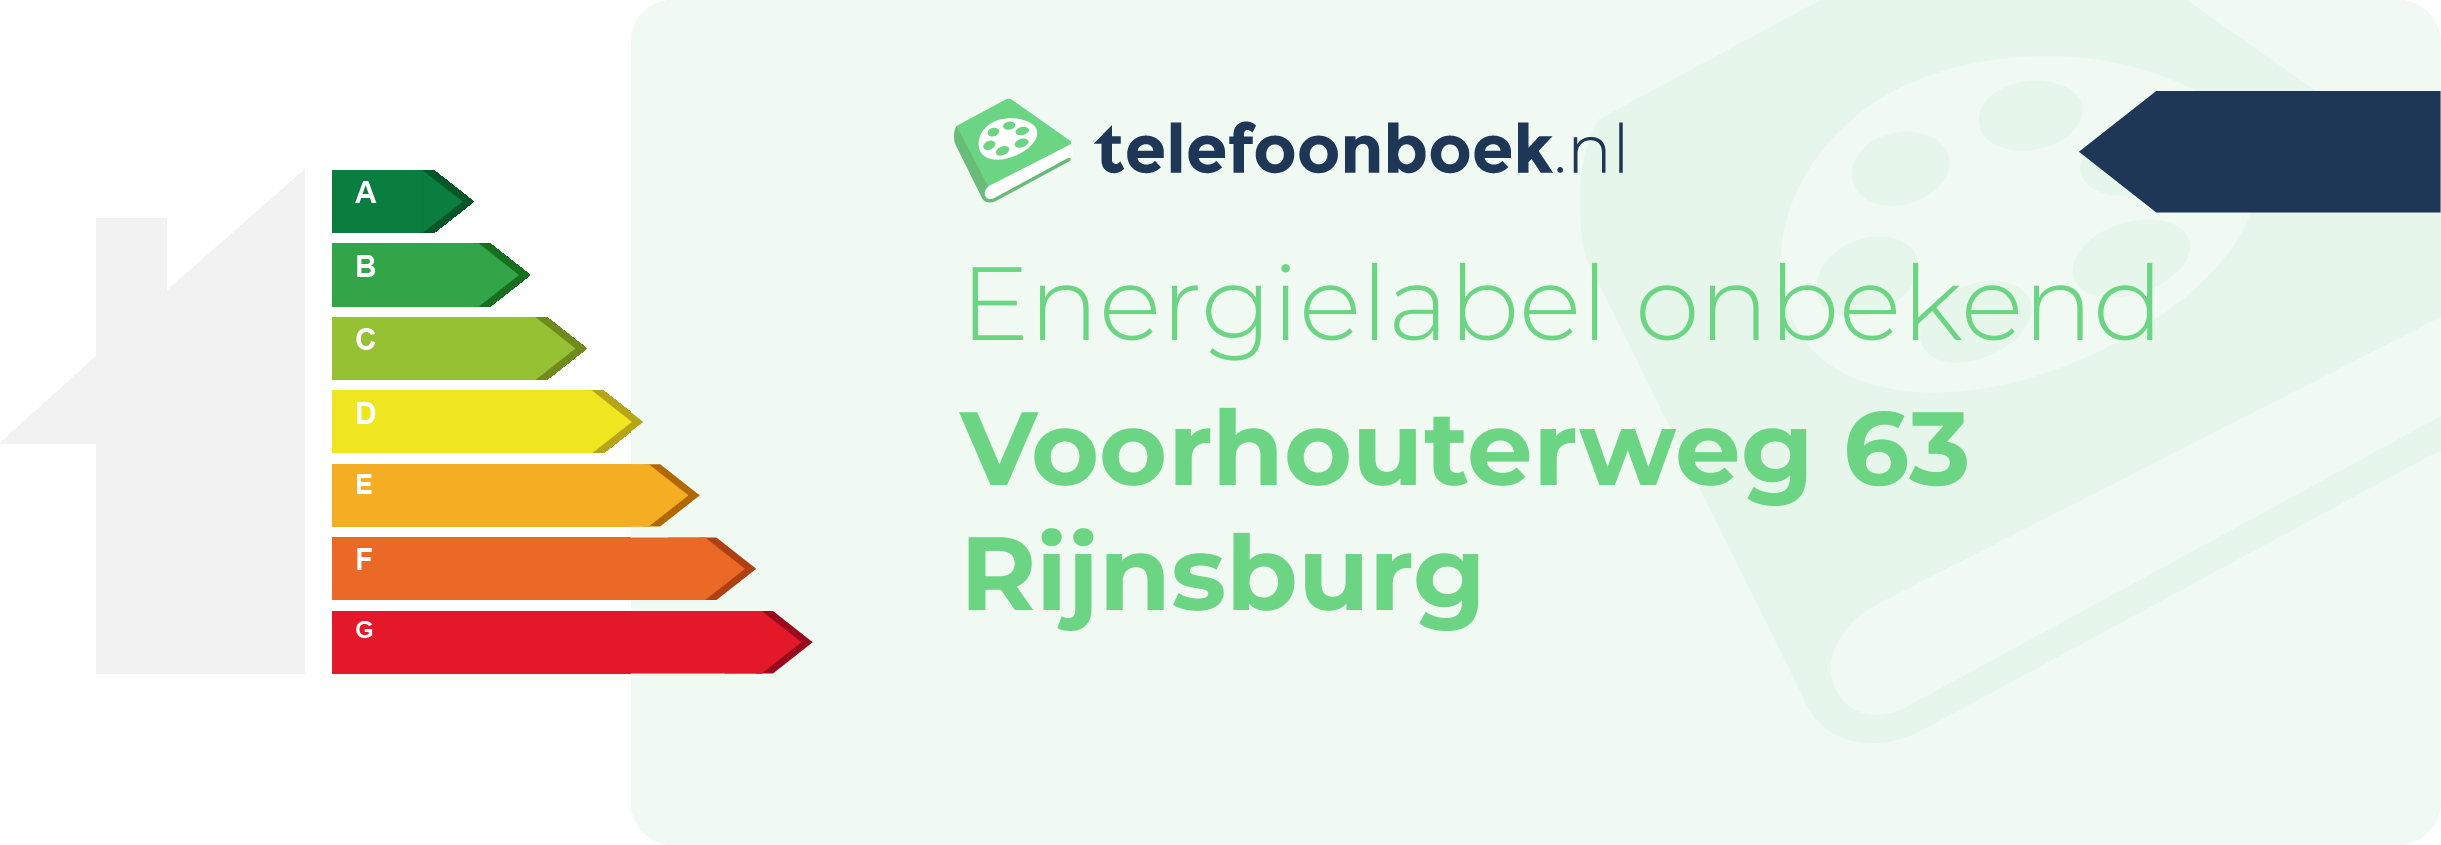 Energielabel Voorhouterweg 63 Rijnsburg